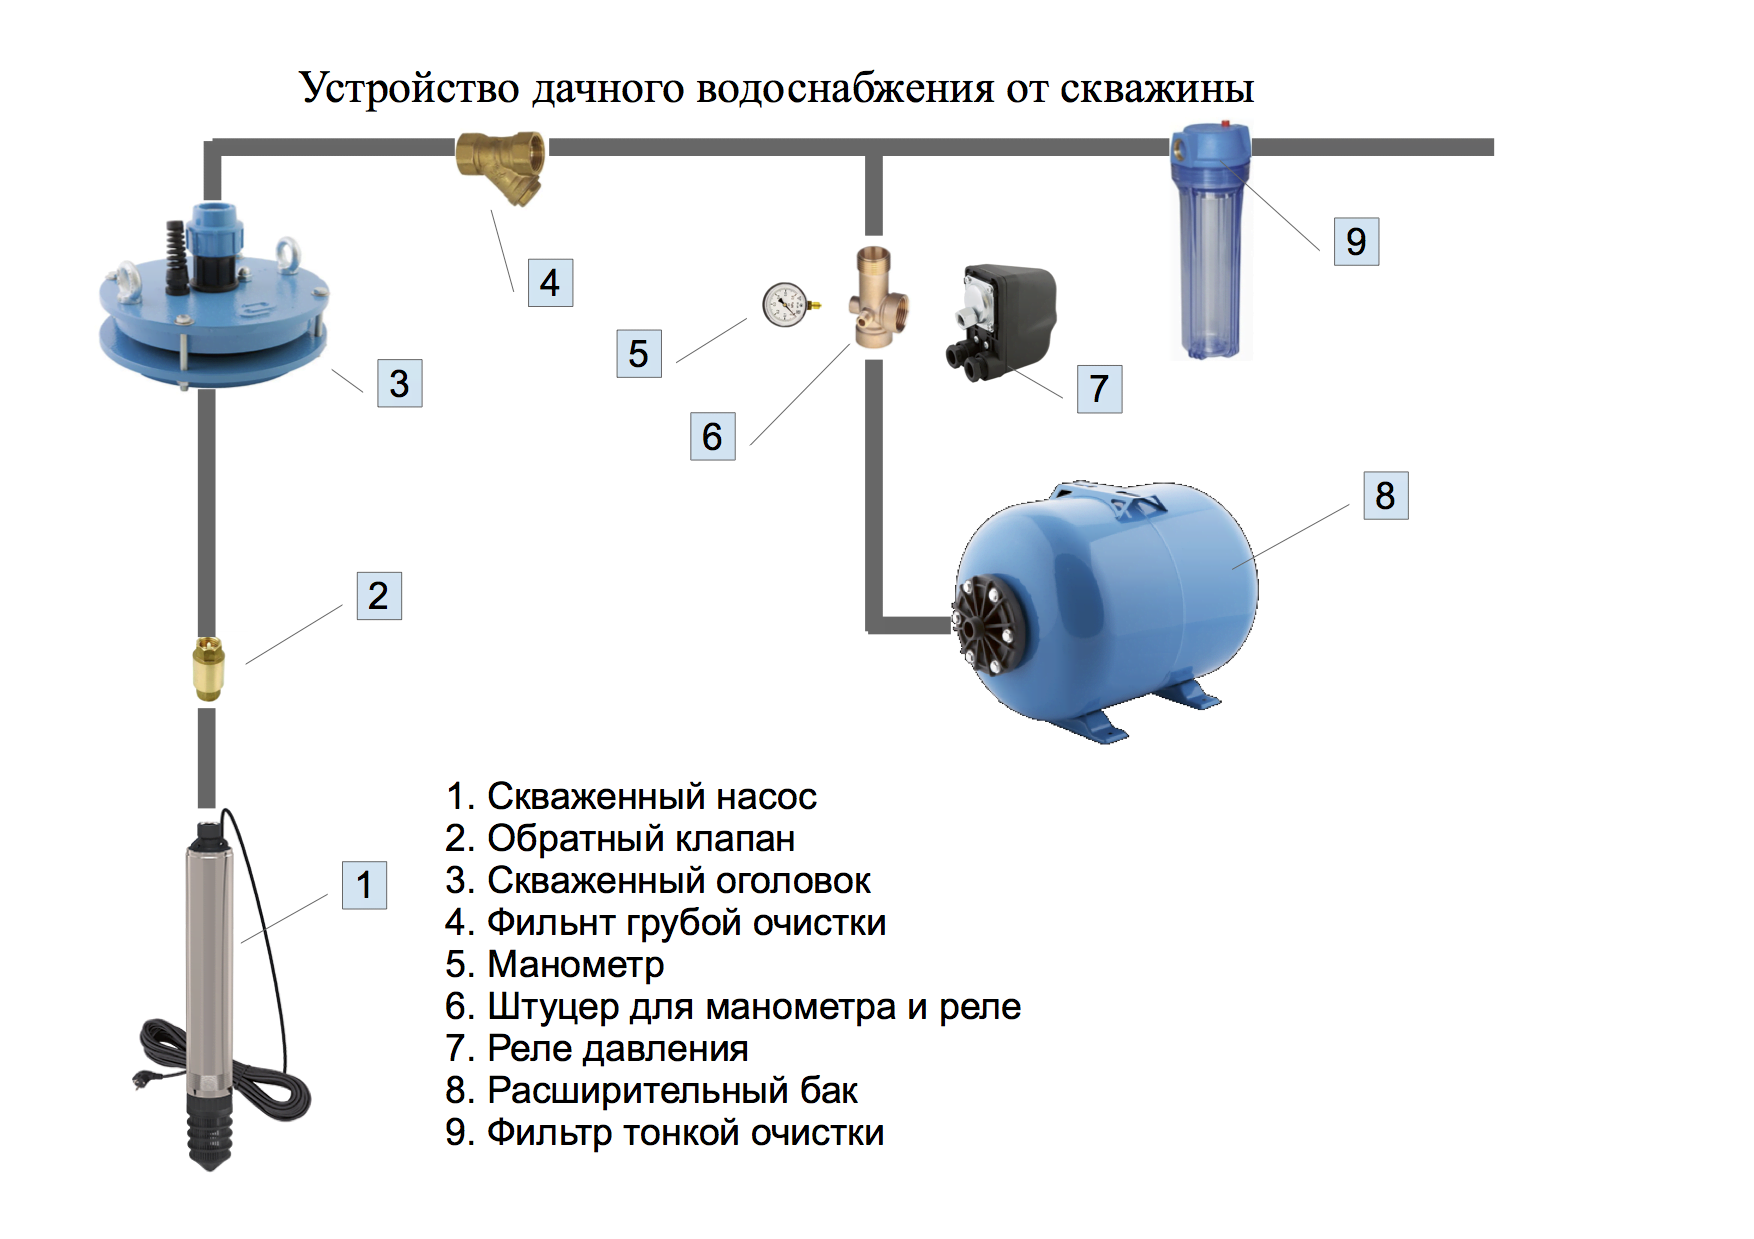 Как подключить гидроаккумулятор к погружному насосу: схема по шагам